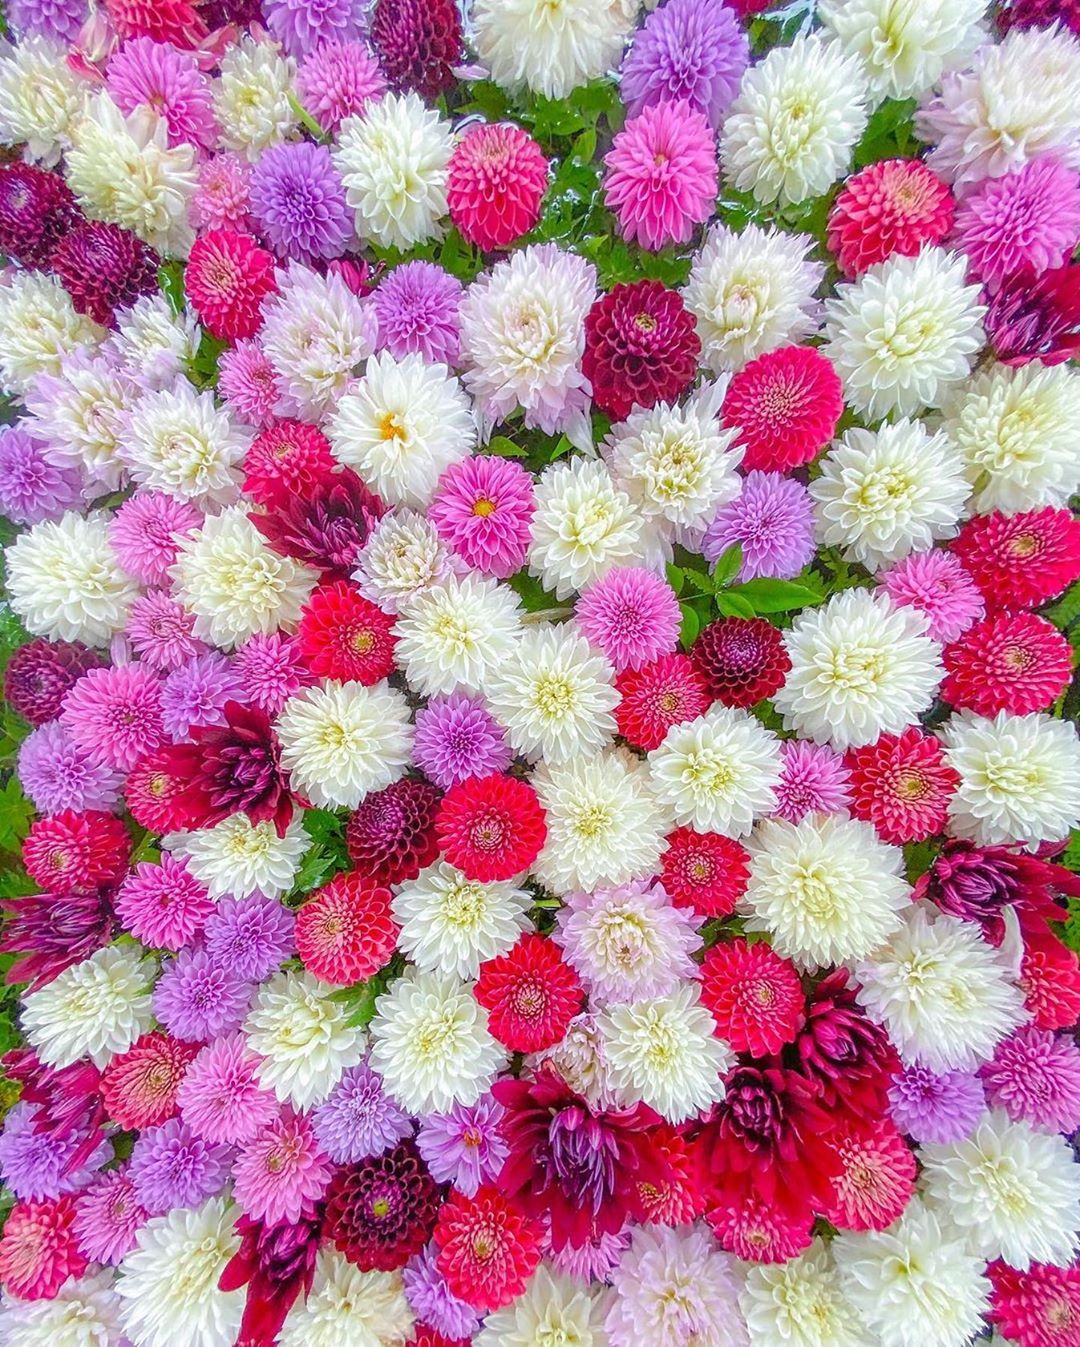 Retrip News Retrip 福岡 福岡県福津市の 宮地嶽神社 でも 手 水鉢が季節の花々で彩られています こちらは華やかで可愛らしいダリアの花手水です 現在はダリアからかわ Wacoca